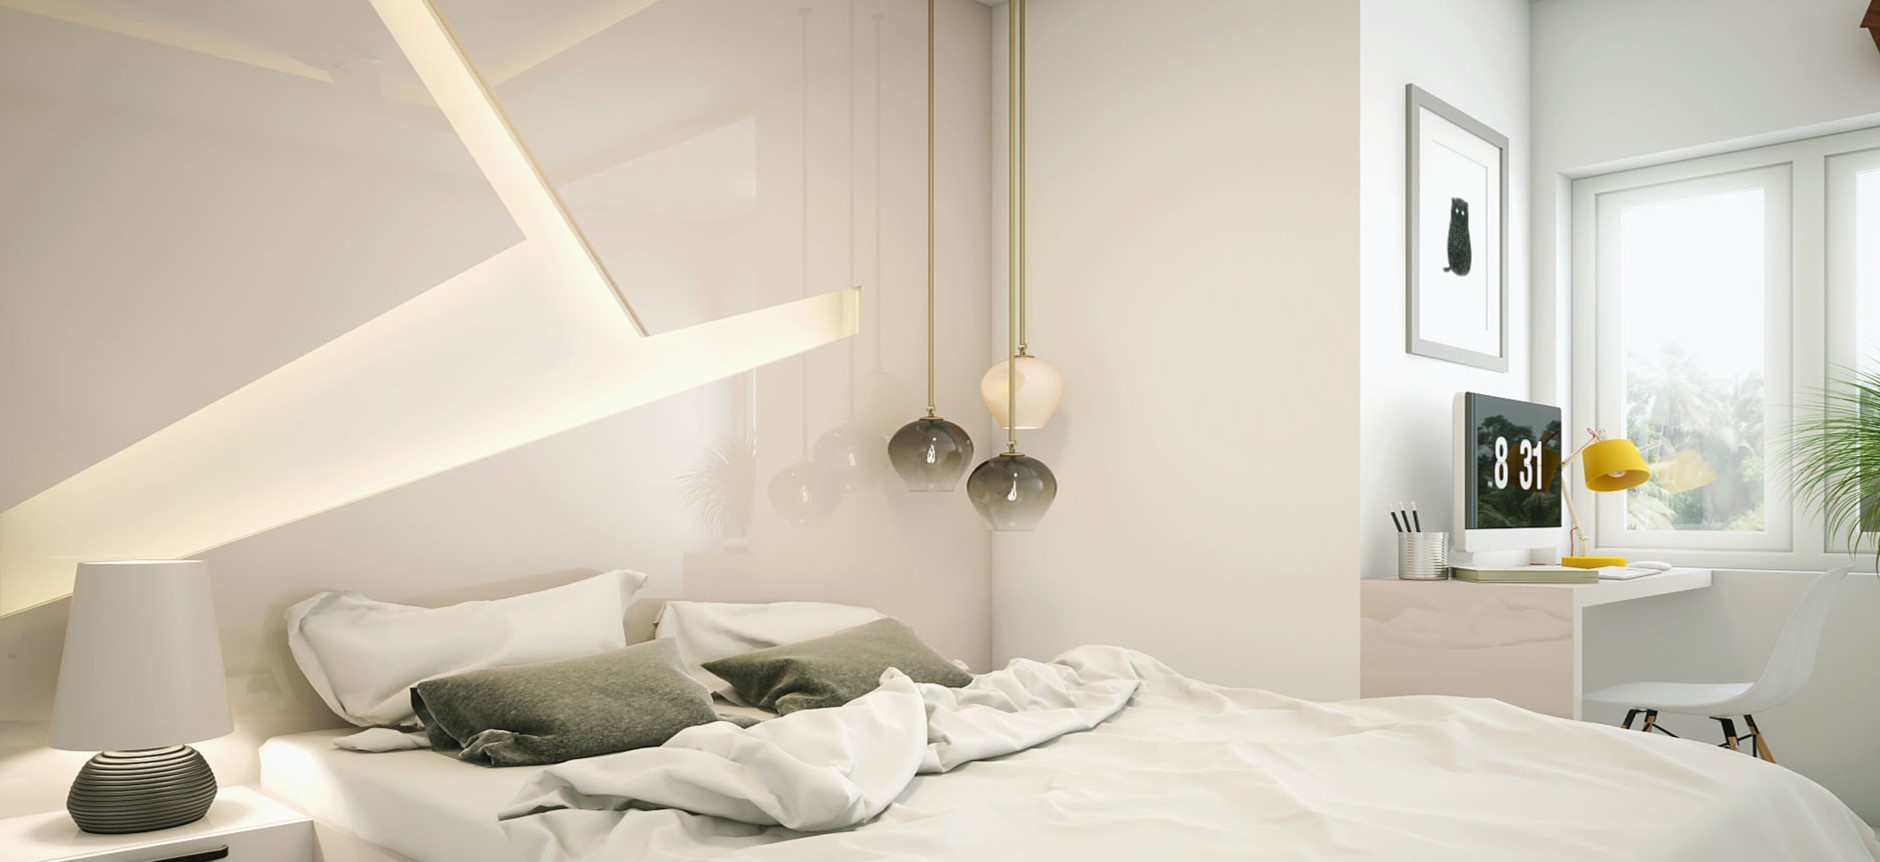 Темные светильники и подушки гармонируют с белой спальней